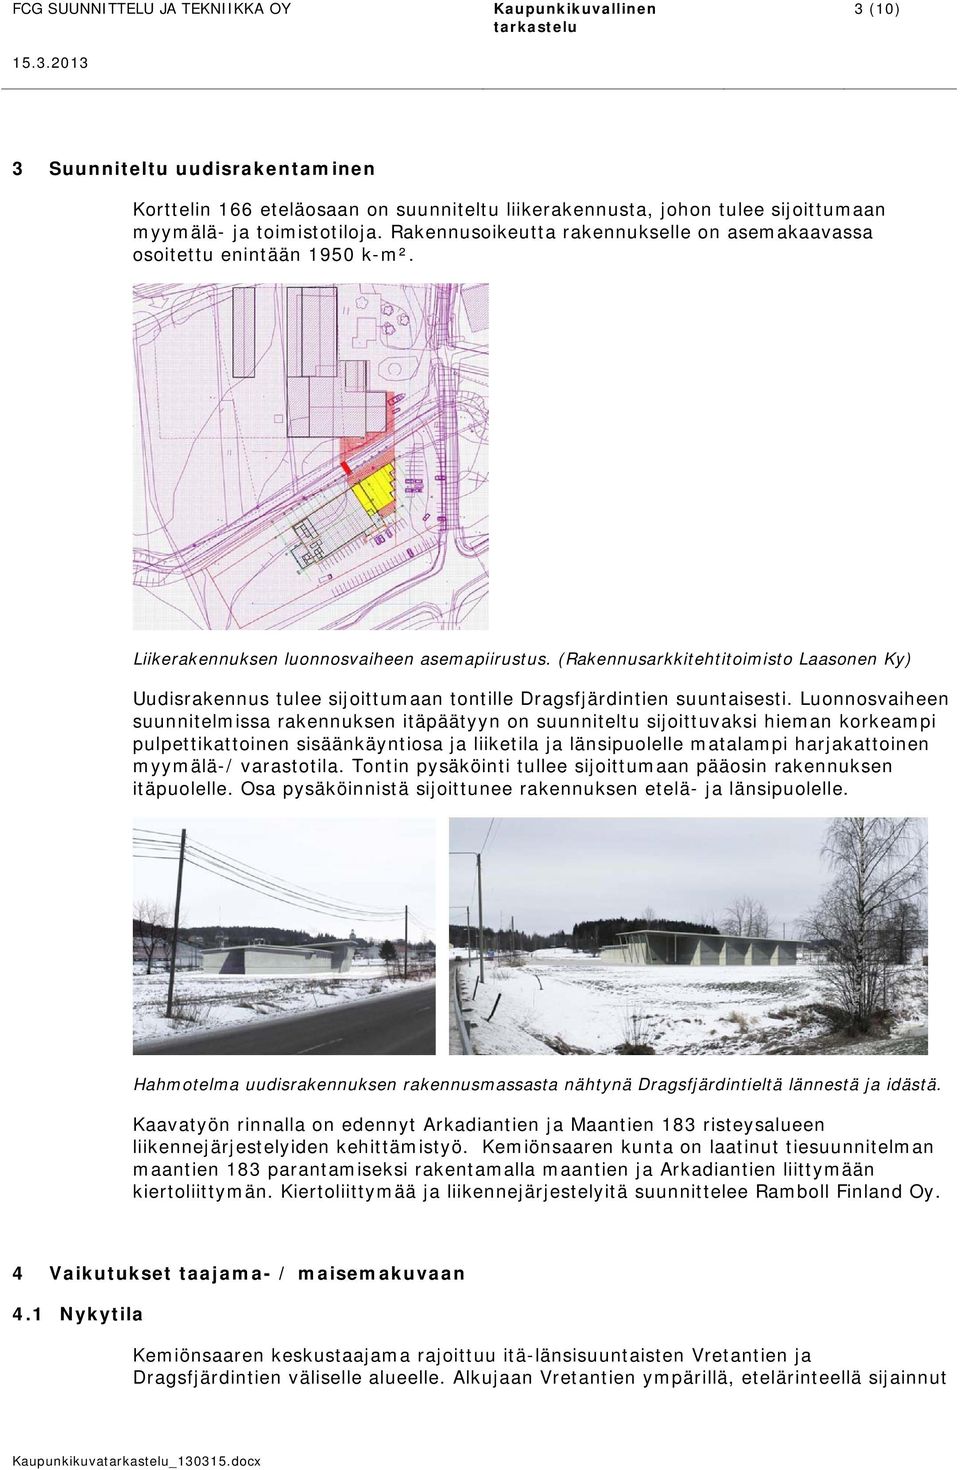 (Rakennusarkkitehtitoimisto Laasonen Ky) Uudisrakennus tulee sijoittumaan tontille Dragsfjärdintien suuntaisesti.